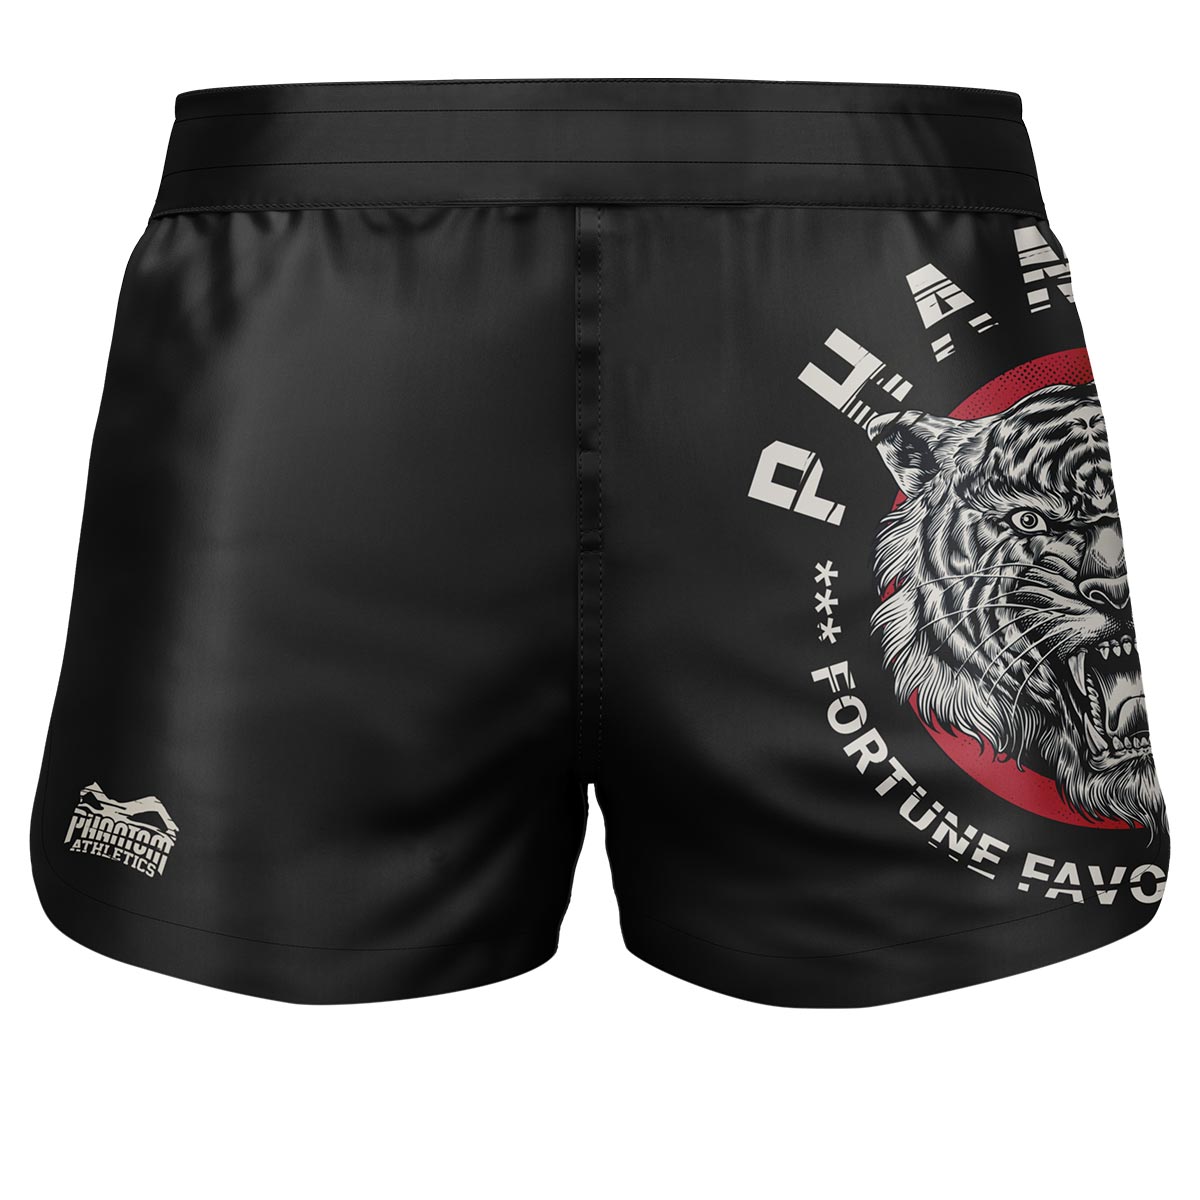 Phantom Fightshorts Fusion 2in1. Ultimative Shorts für deinen Kampfsport. IDeal für MMA, Muay Thai, BJJ, Ringen und mehr. In schwarz mit unserem beliebten Tiger Unit Design.